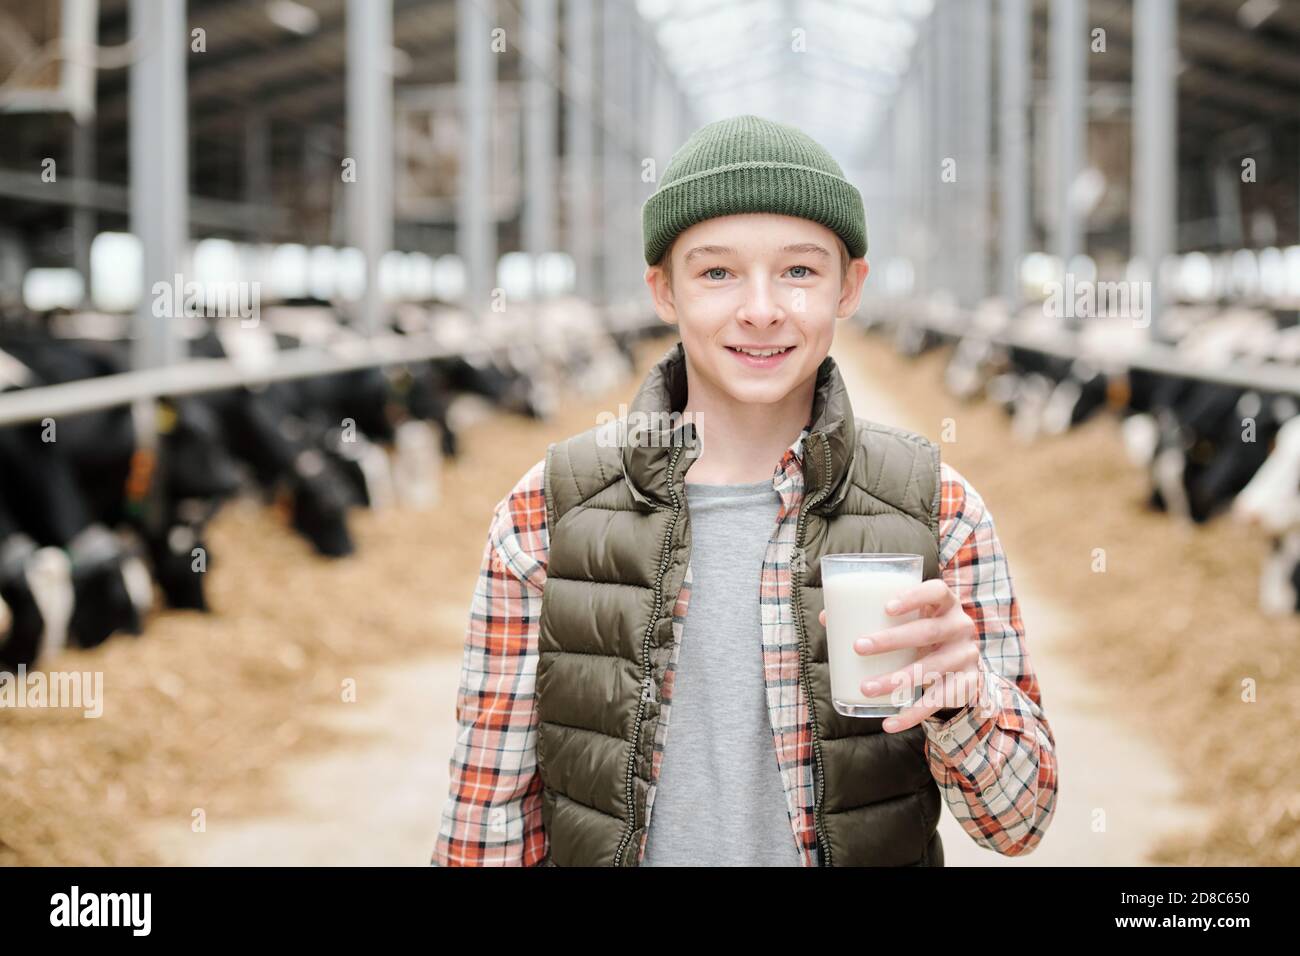 Portrait von fröhlichen Bauernjunge in Hut und Weste trinken Frische Milch  nach dem Melken der Kuh im Kuhstall Stockfotografie - Alamy